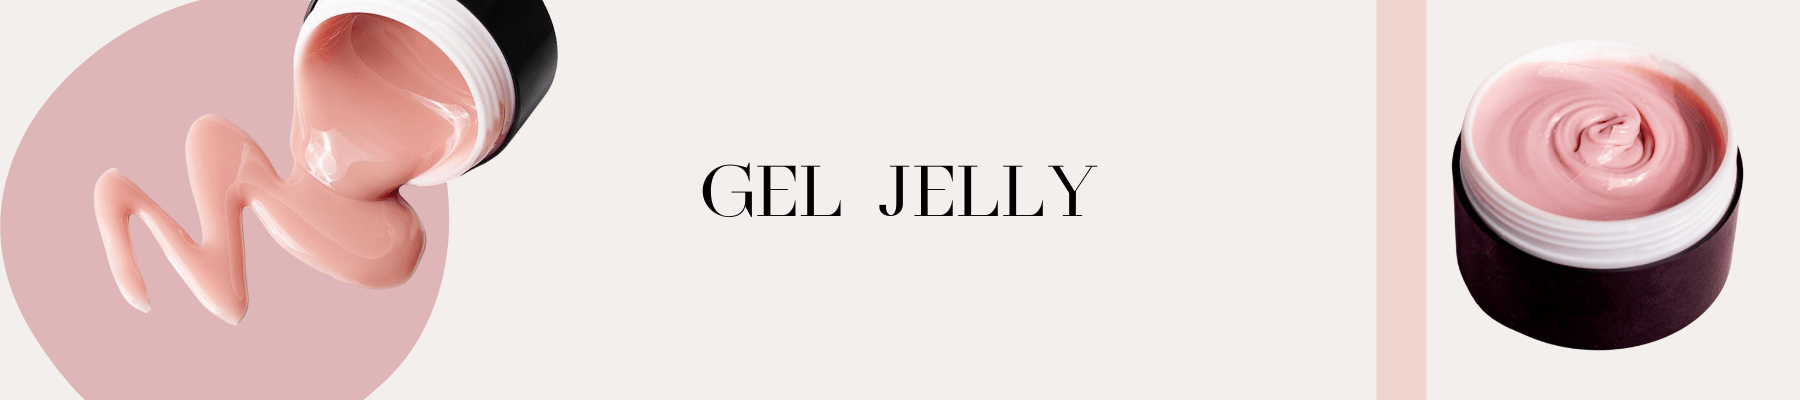 Gel Jelly for Modeling